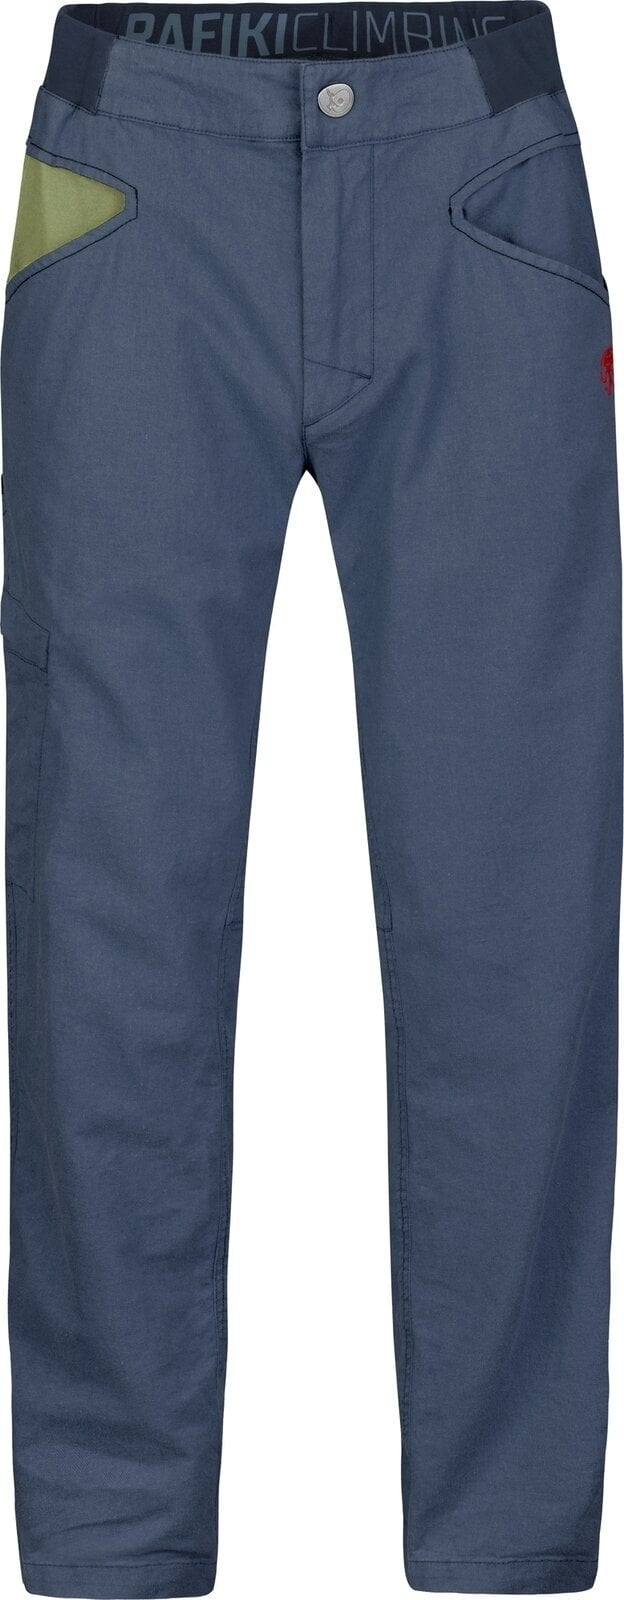 Pantalons outdoor Rafiki Grip Man Pants India Ink XL Pantalons outdoor